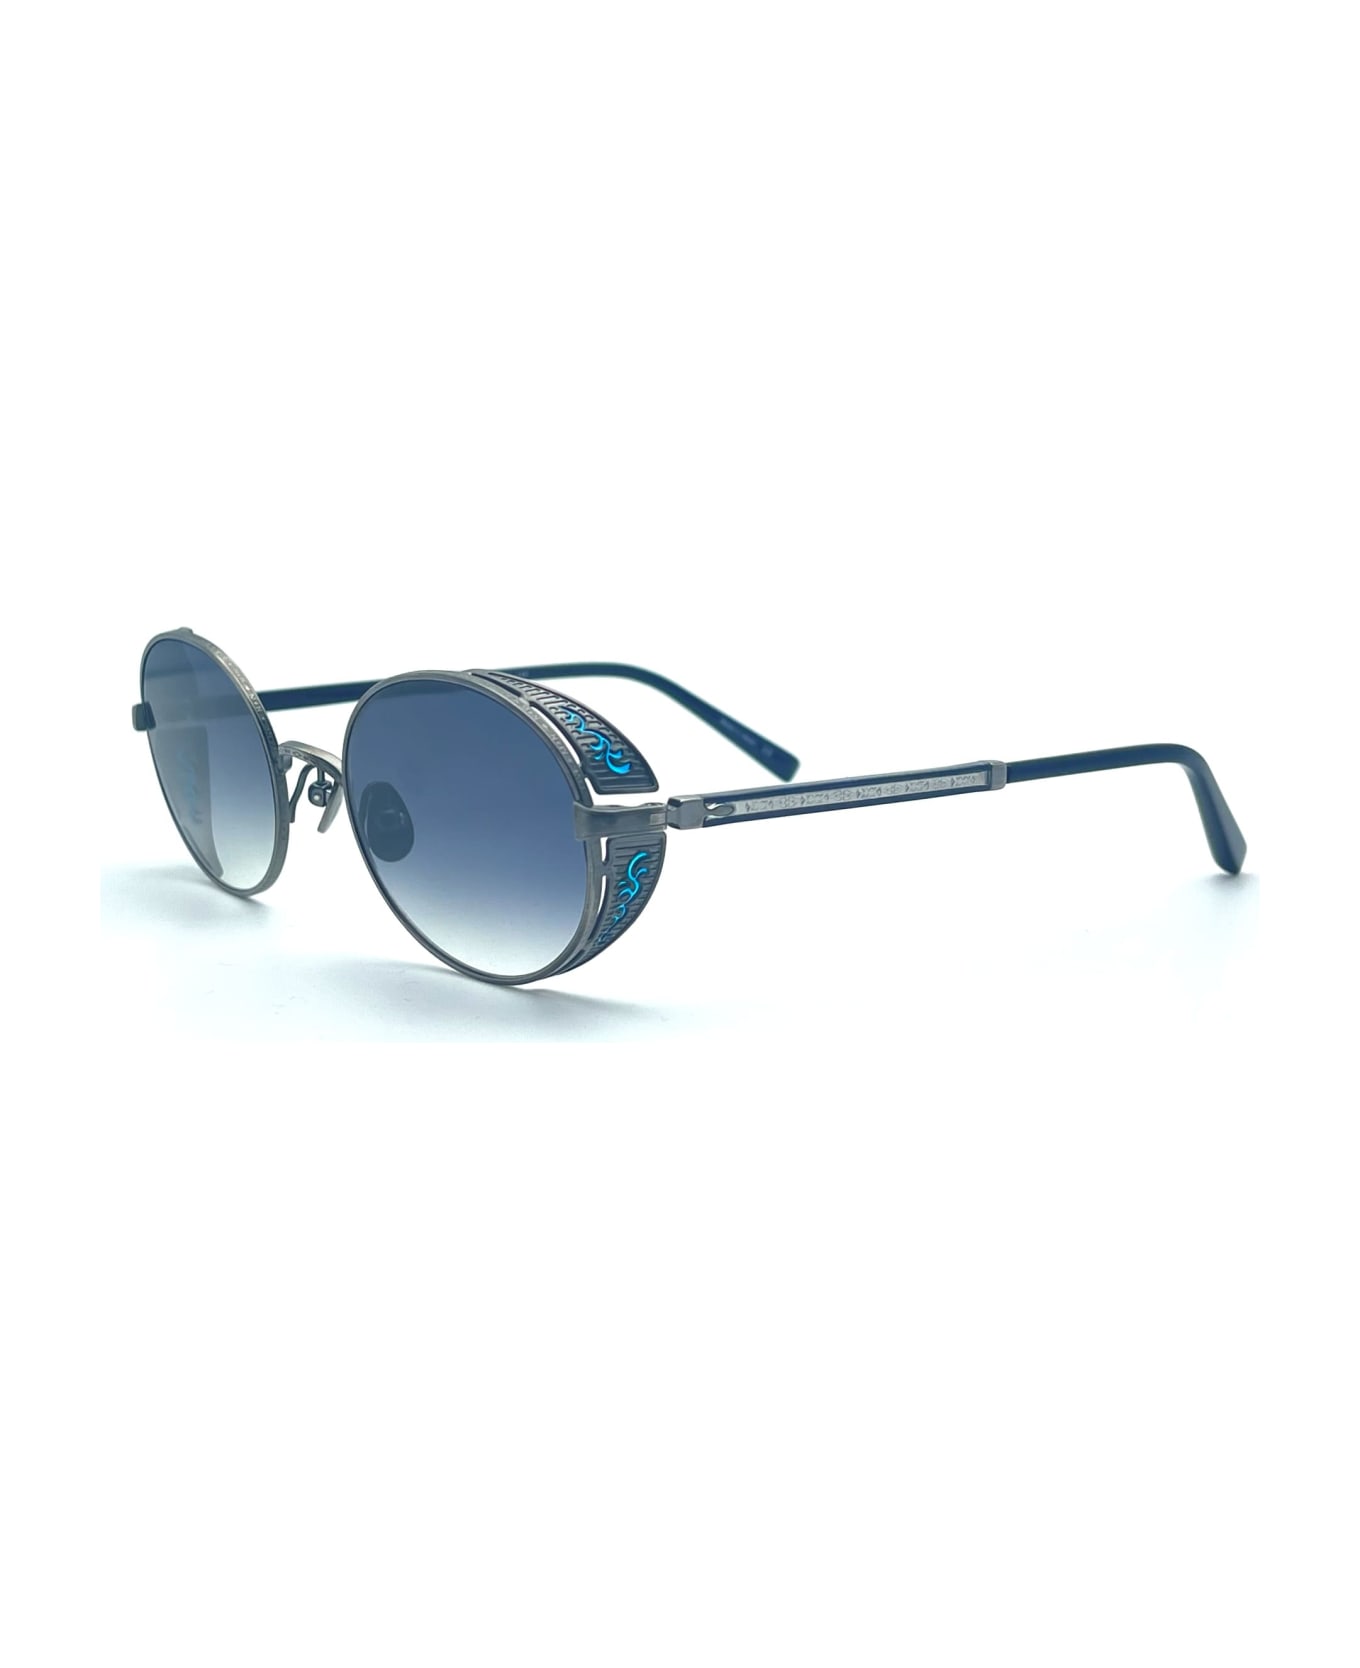 Matsuda M3137 - Antique Silver Sunglasses - Silver サングラス